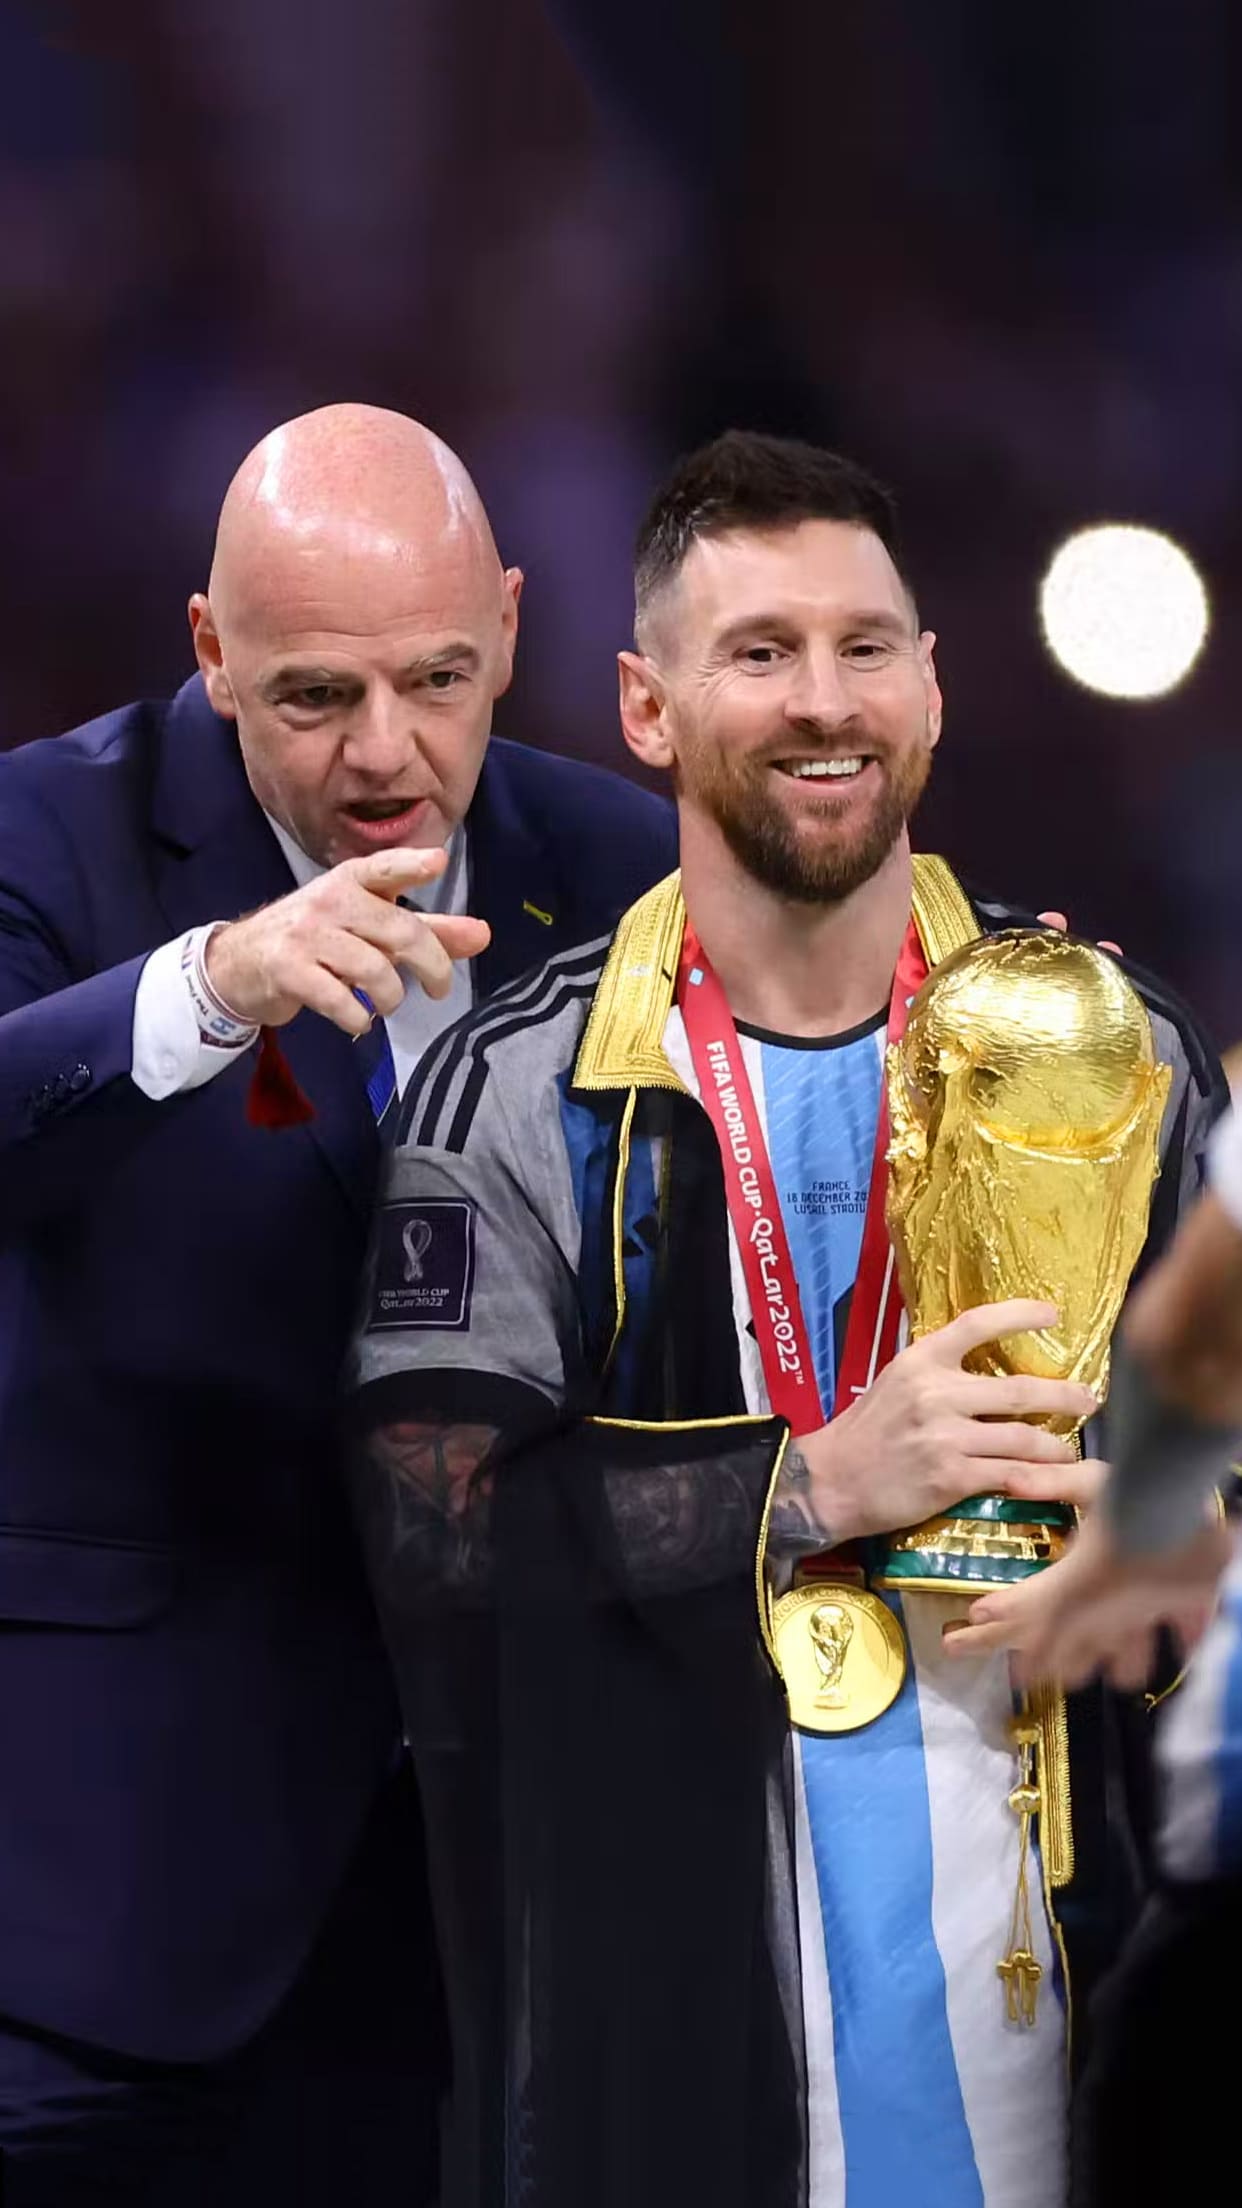 Messi với chiếc cúp là hình ảnh hoàn hảo cho các fan hâm mộ của anh chàng. Với hình nền này, bạn sẽ cảm nhận được niềm vui của Messi khi đạt được mục tiêu lớn nhất trong sự nghiệp bóng đá của mình. Hãy cùng chia sẻ niềm hạnh phúc này khi đặt hình nền này làm background cho thiết bị của bạn.